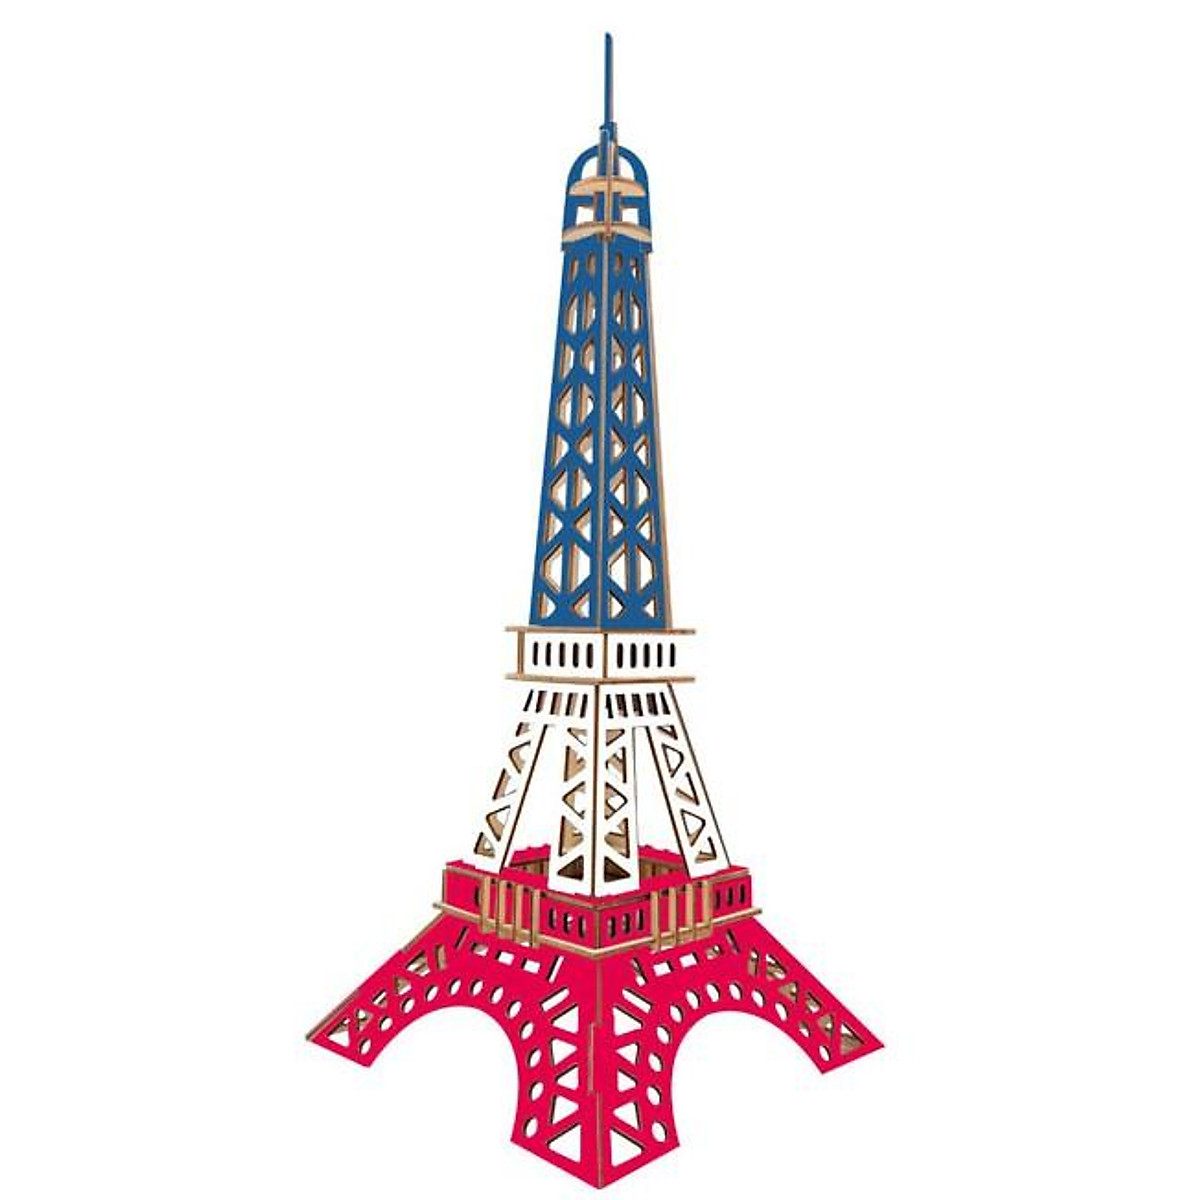 Đồ chơi lắp ghép gỗ 3D mô hình tháp Eiffel cắt lazer - 52 mảnh ghép